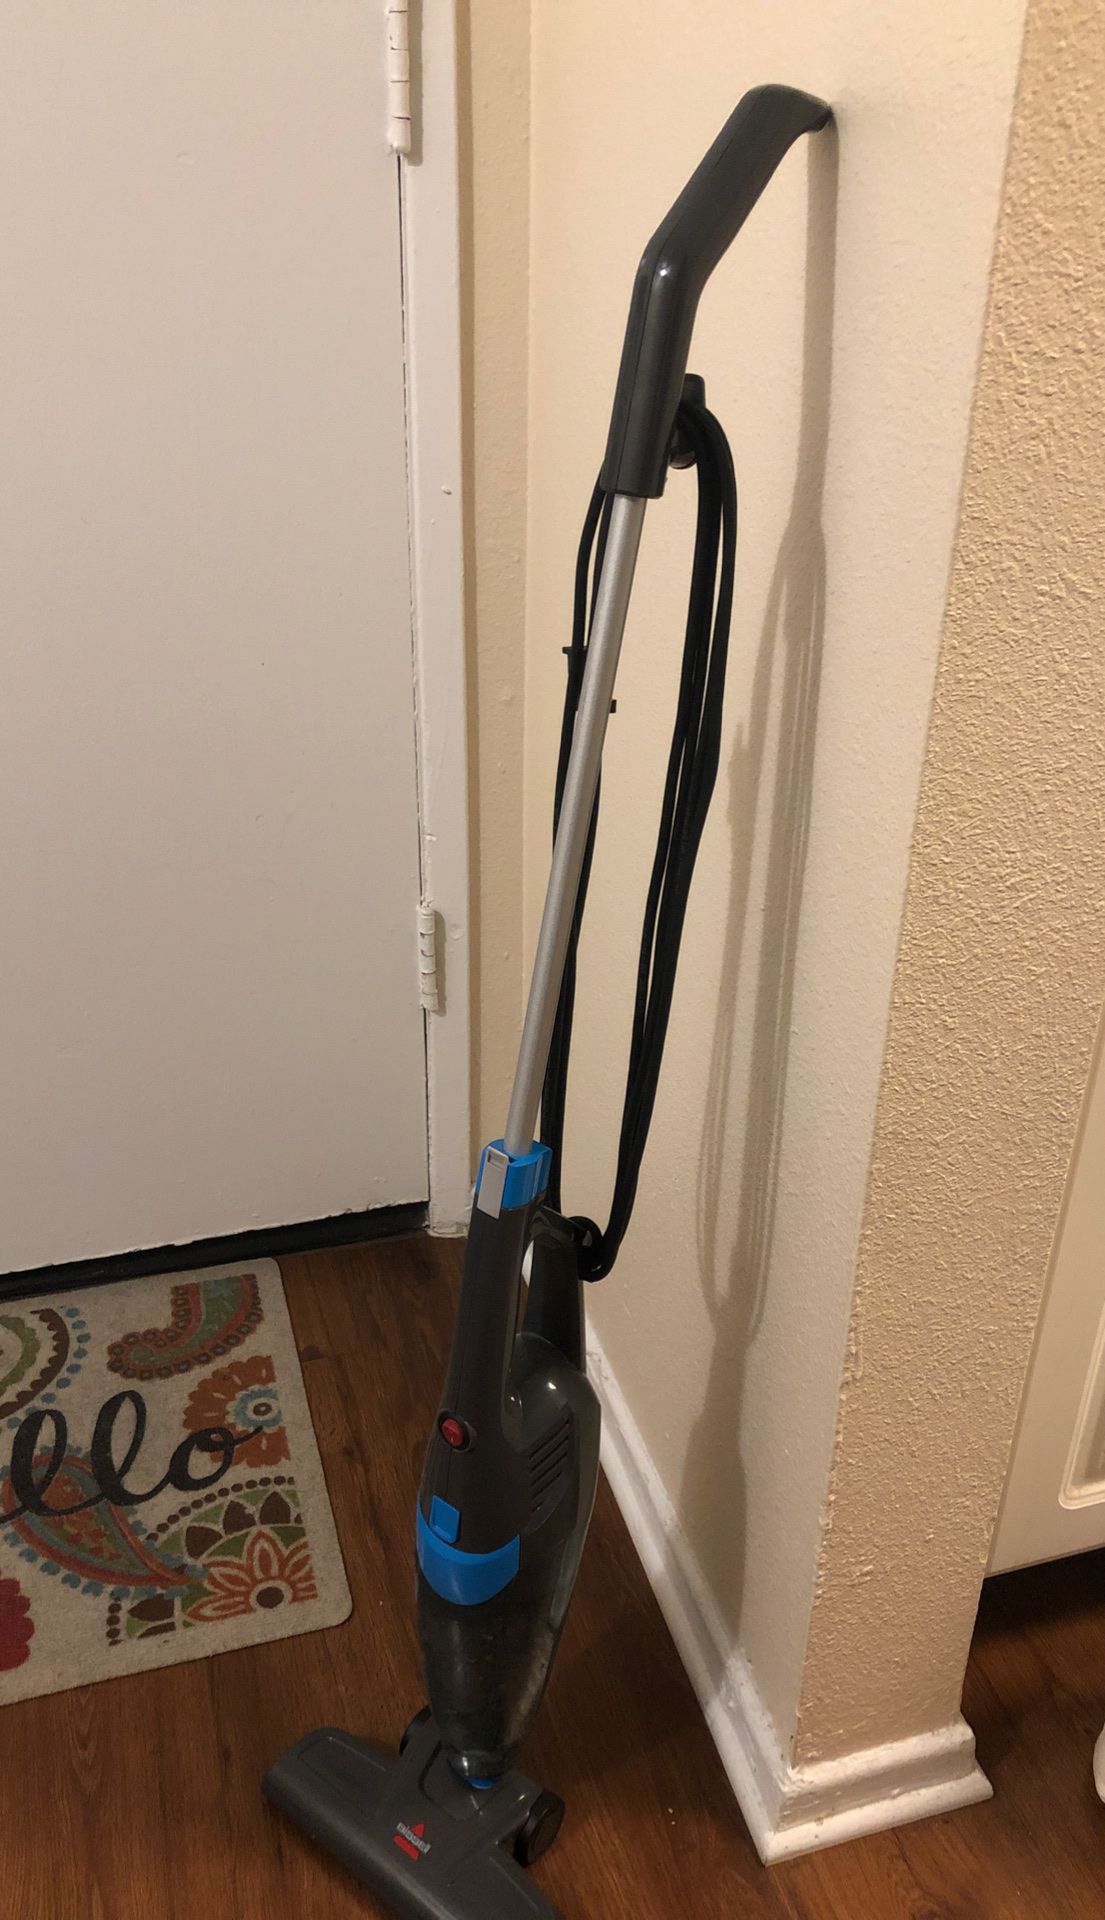 Vacuum cleaner - good condition